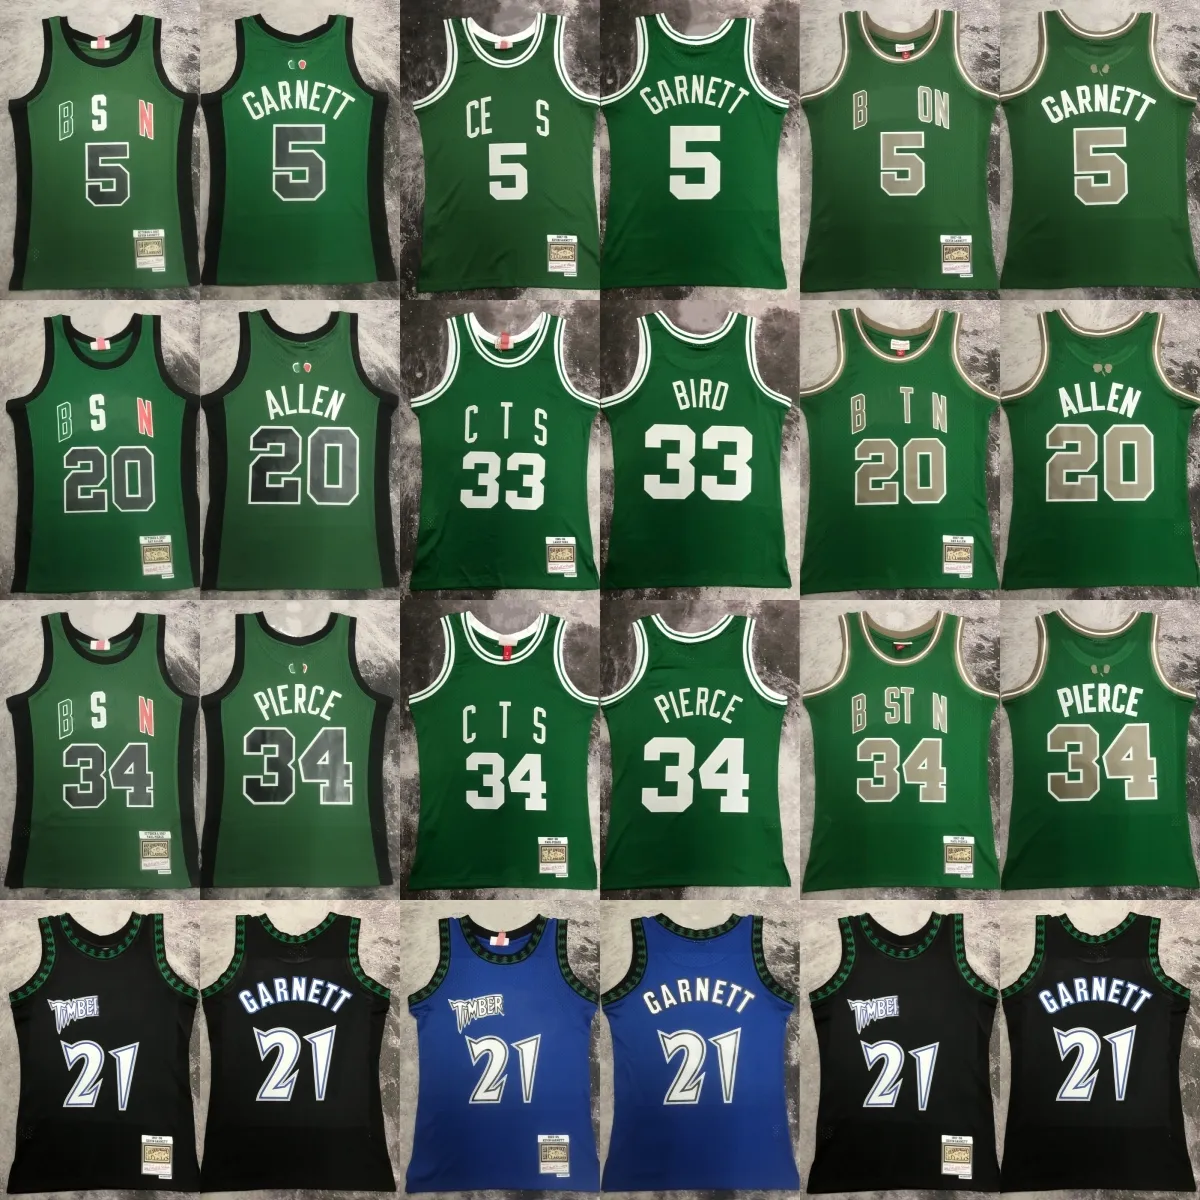 Tryckt klassisk Retro 1985-86 Basketball 33 Larry Bird Jersey Retro Green 2007-08 Kevin Garnett Ray Allen Paul Pierce Jerseys Shirts för 1997-98 Black Garnett